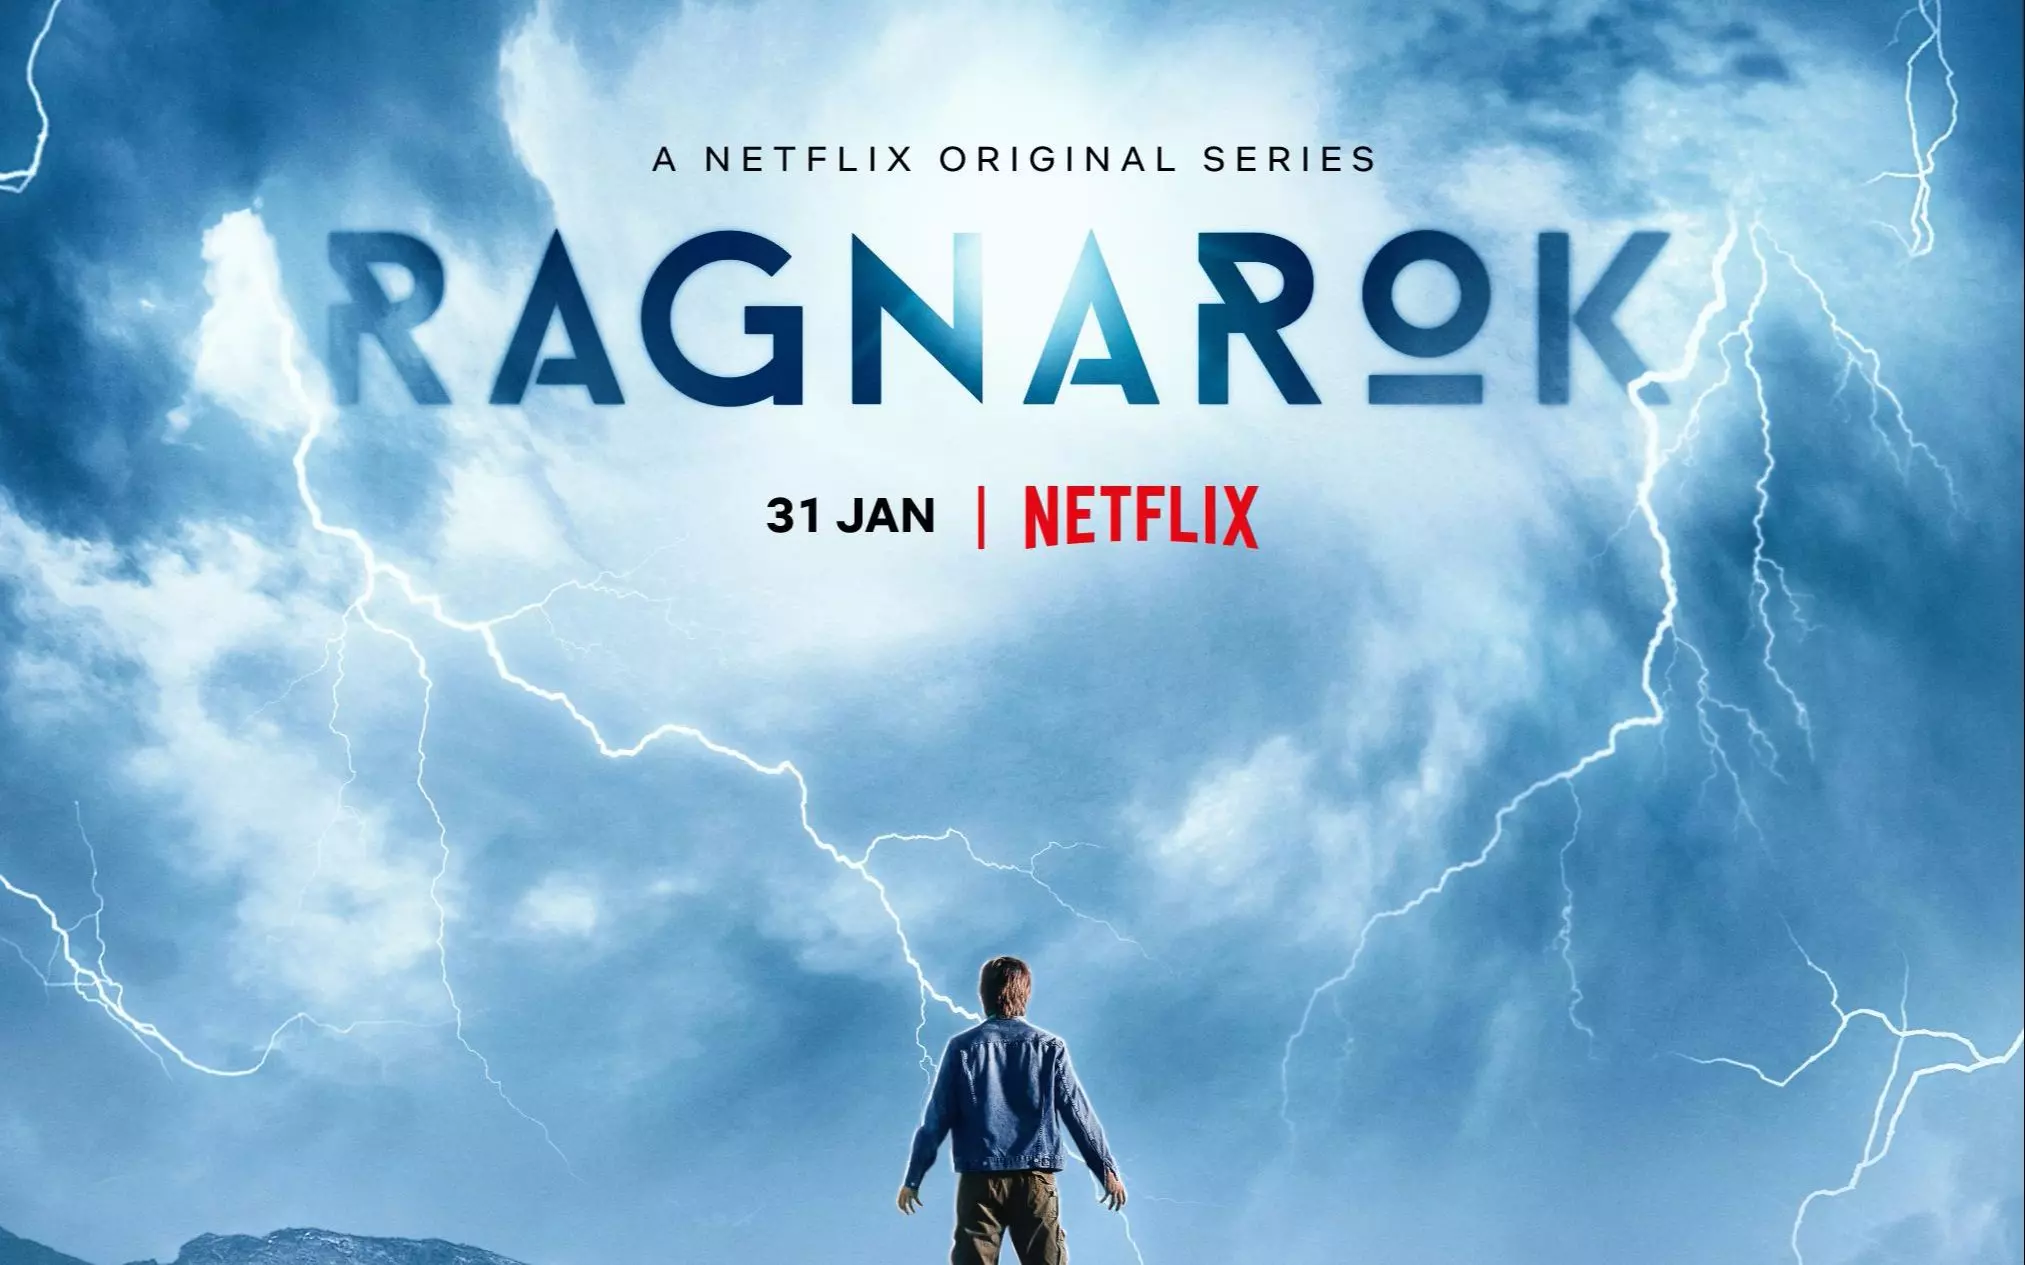 Netflix уведомил своих подписчиков в Твиттере о начале показа нового норвежского сериала "Рагнарек" с 1 февраля.